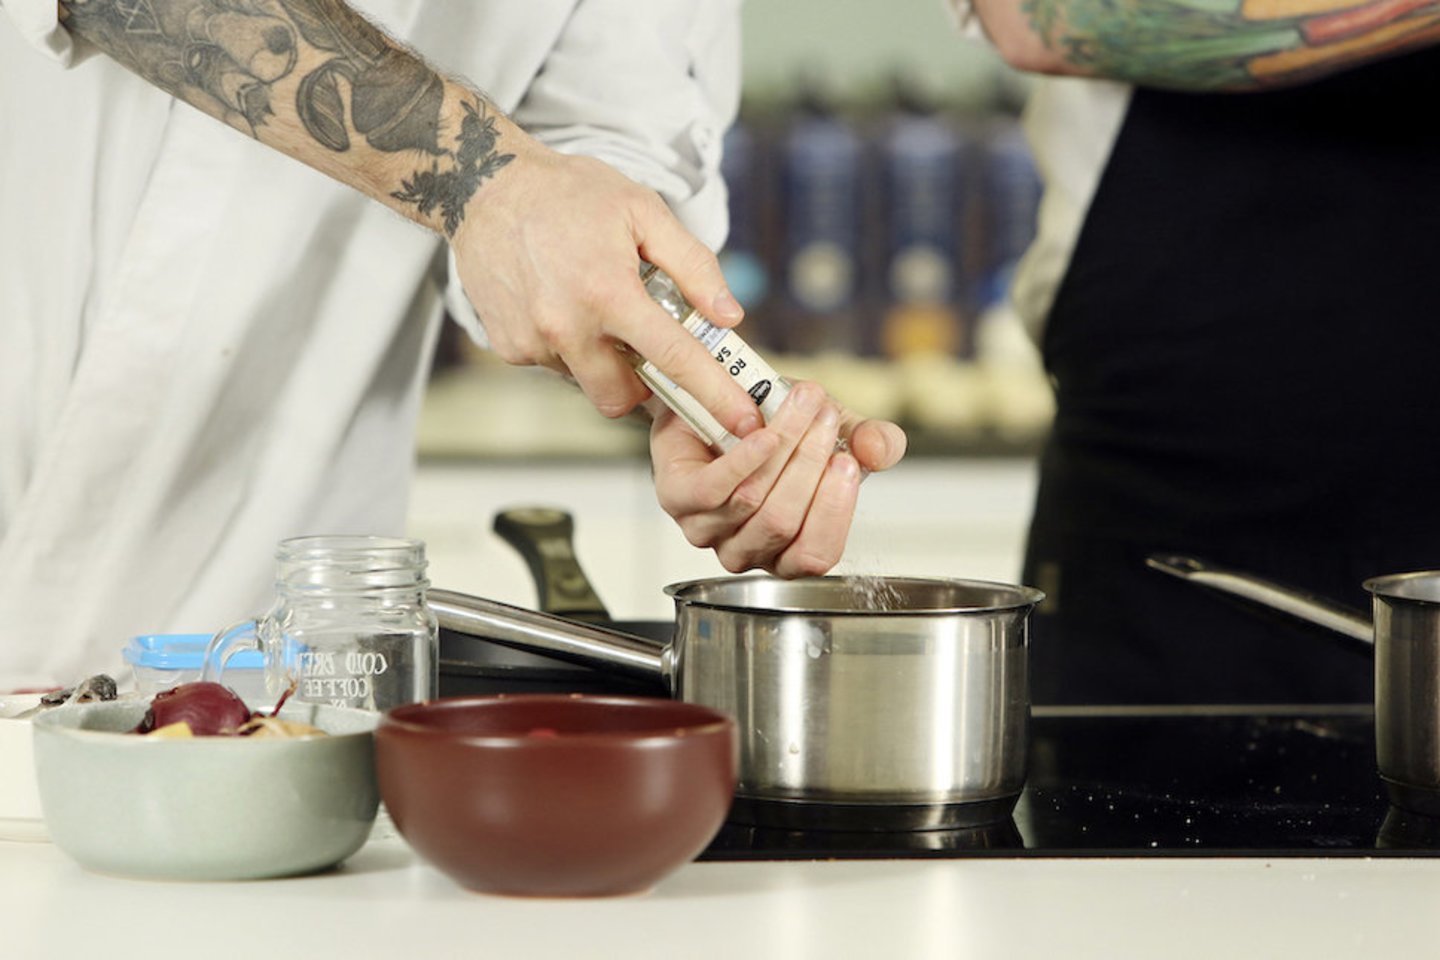 Šefai pristatė Skandinavijos virtuvei būdingus patiekalus, paruoštus puoselėjant tvarumo praktikas.